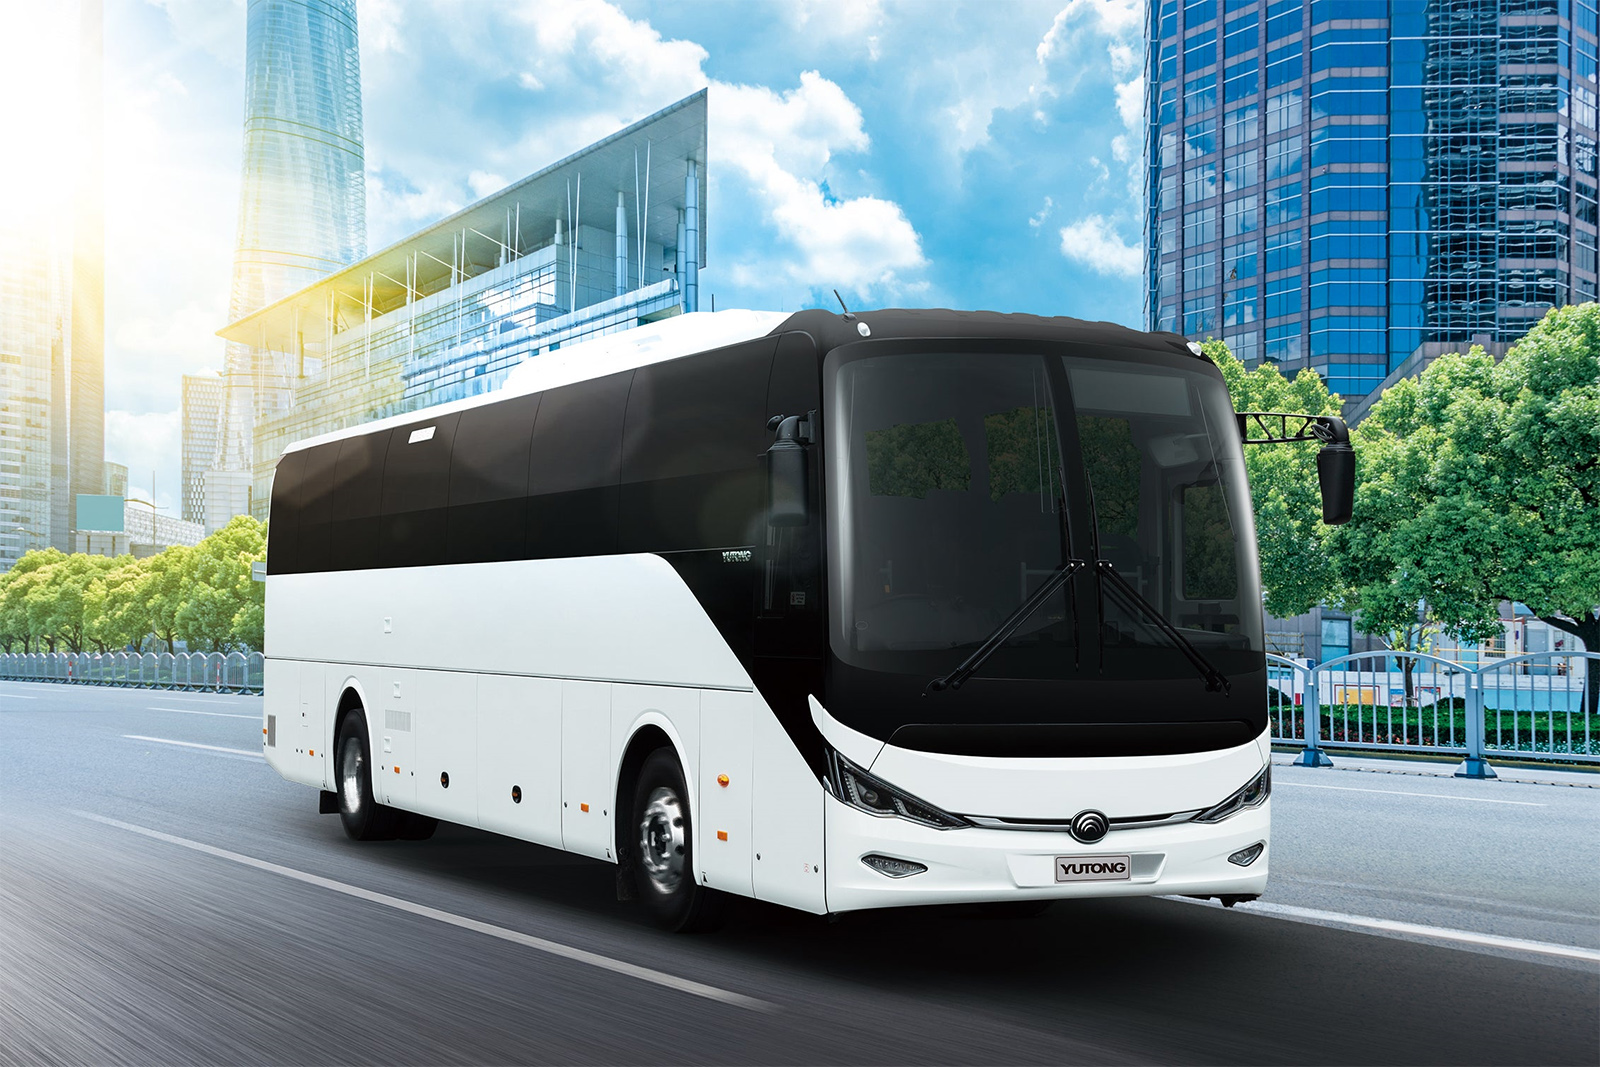 Ezúttal az ausztrál piacon mutatott be új elektromos távolsági buszt a Yutong